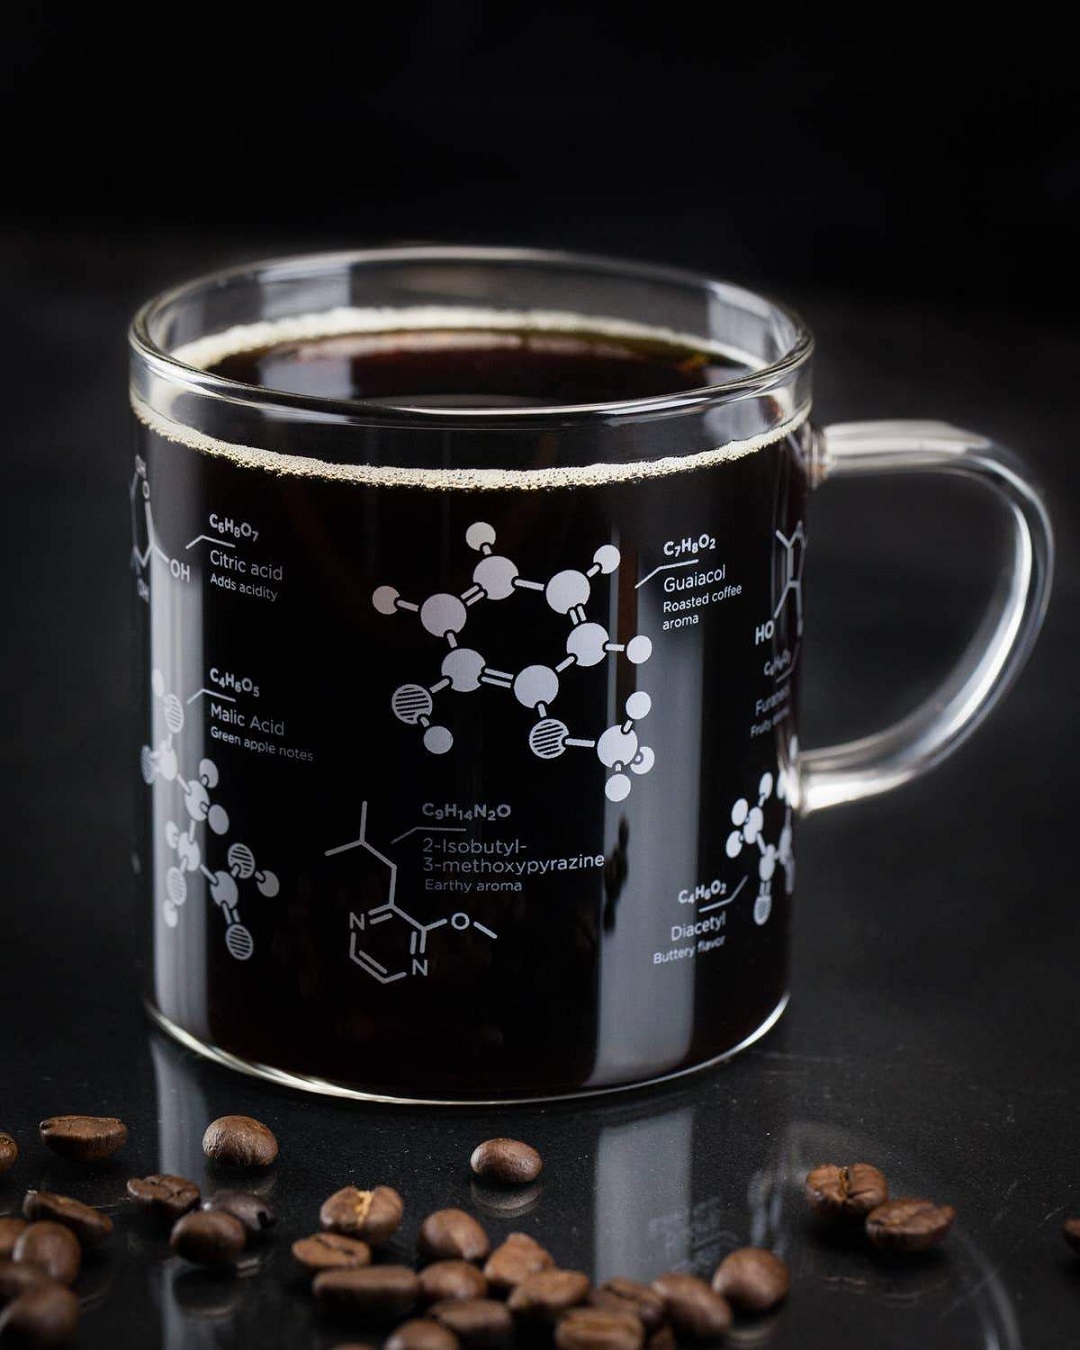 علم فیزیک و شیمی پشت یک فنجان قهوه کامل و بدون نقص